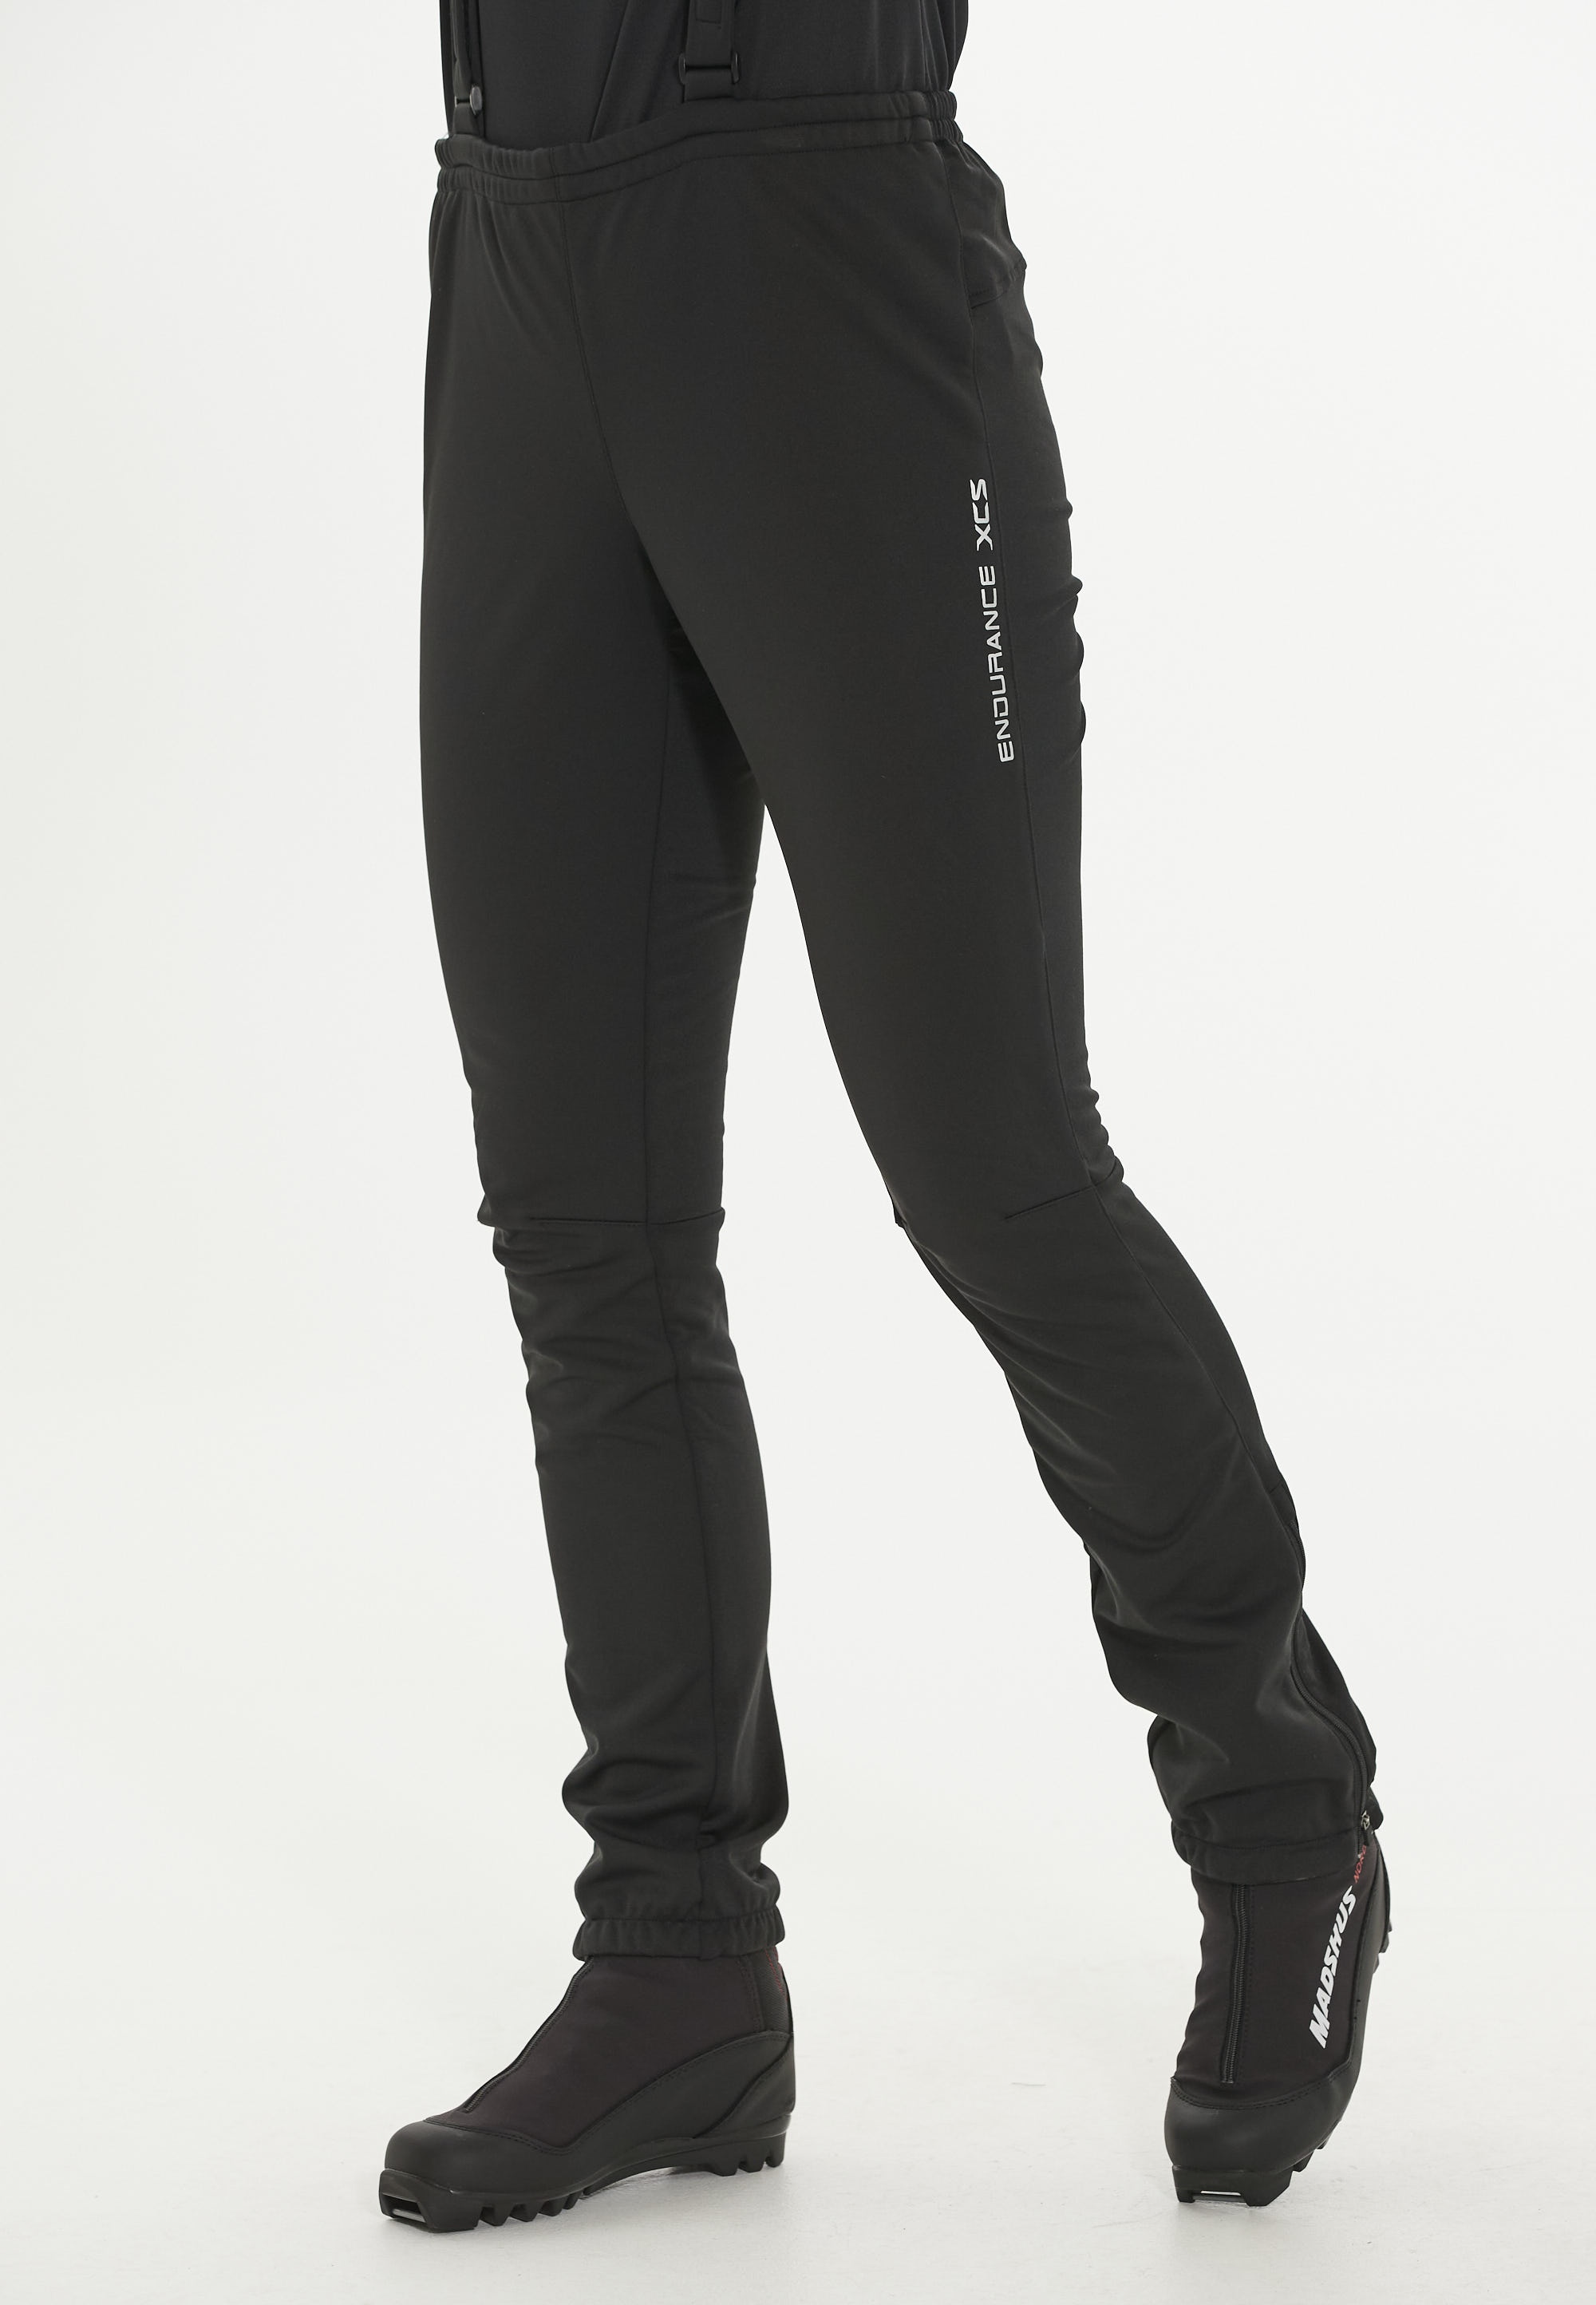 Spodnie do narciarstwa biegowego damskie Endurance Zora XCS